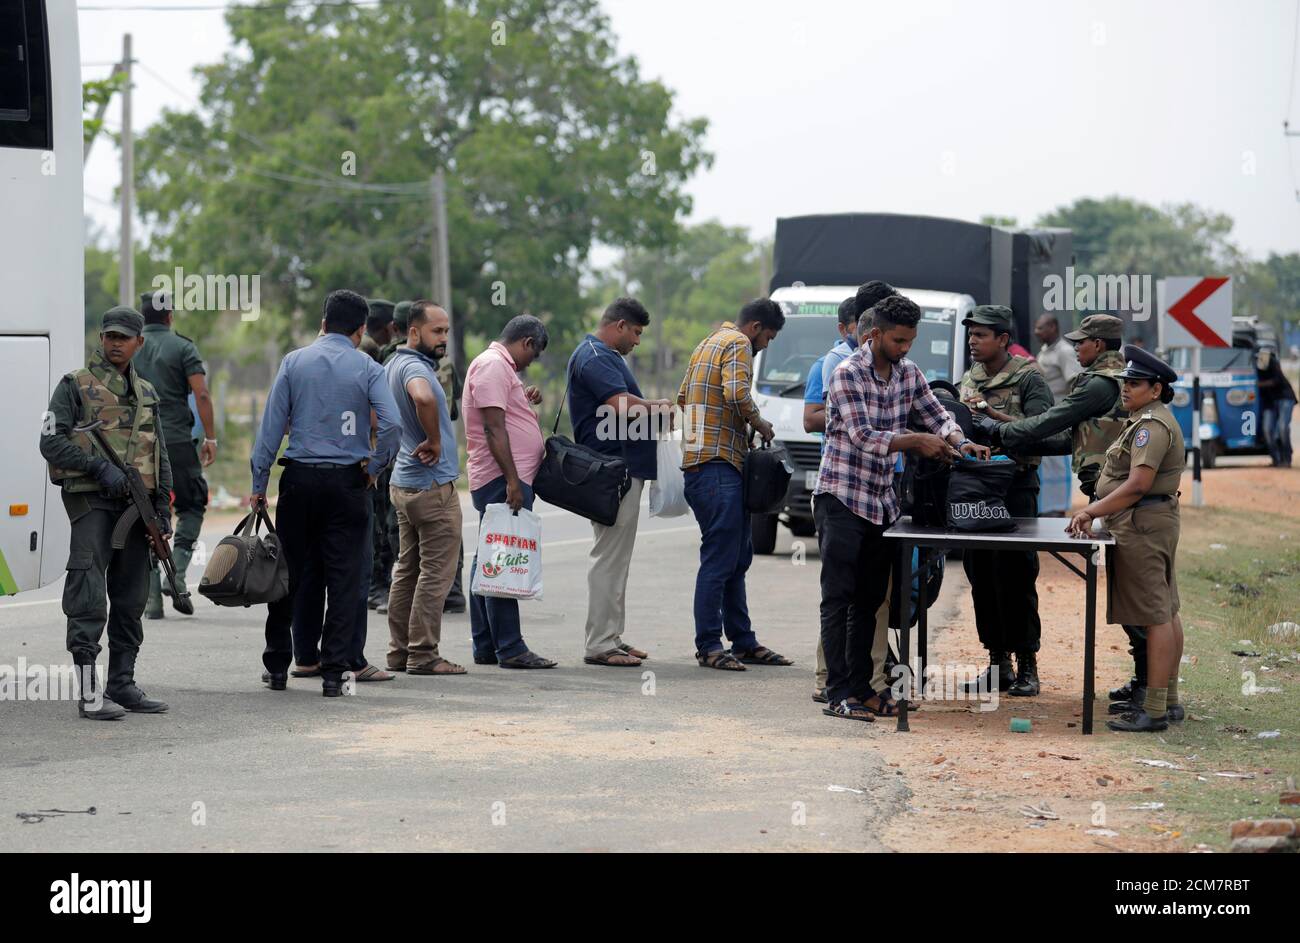 El personal del ejército de Sri Lanka busca a personas y sus bolsos en un punto de control en la aldea de Kattankudy en Batticaloa, Sri Lanka, 28 de abril de 2019. REUTERS/Dinuka Liyanawatte Foto de stock